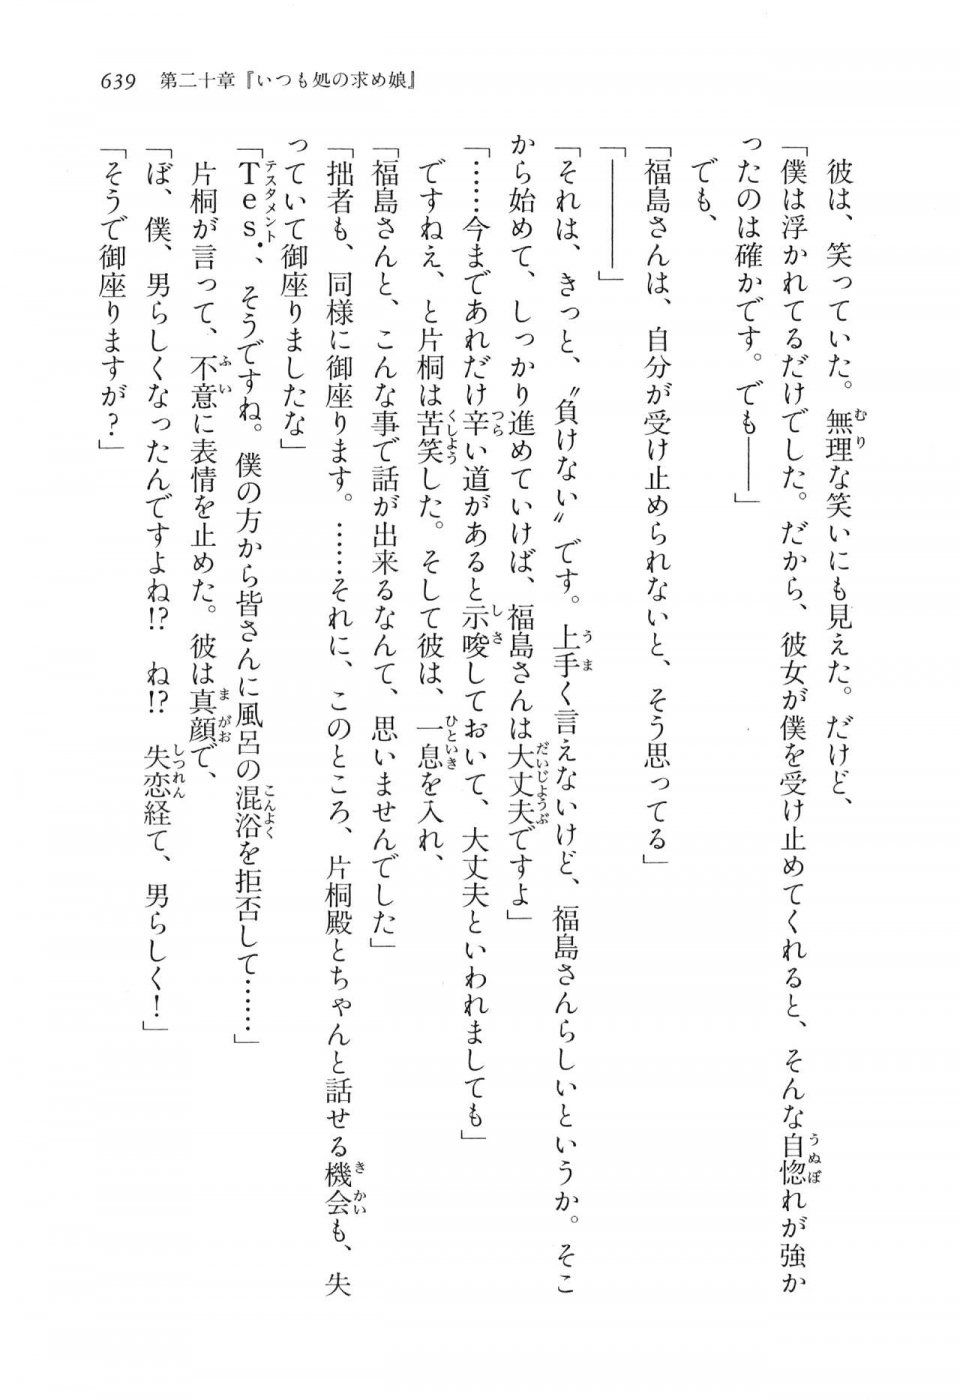 Kyoukai Senjou no Horizon LN Vol 16(7A) - Photo #639